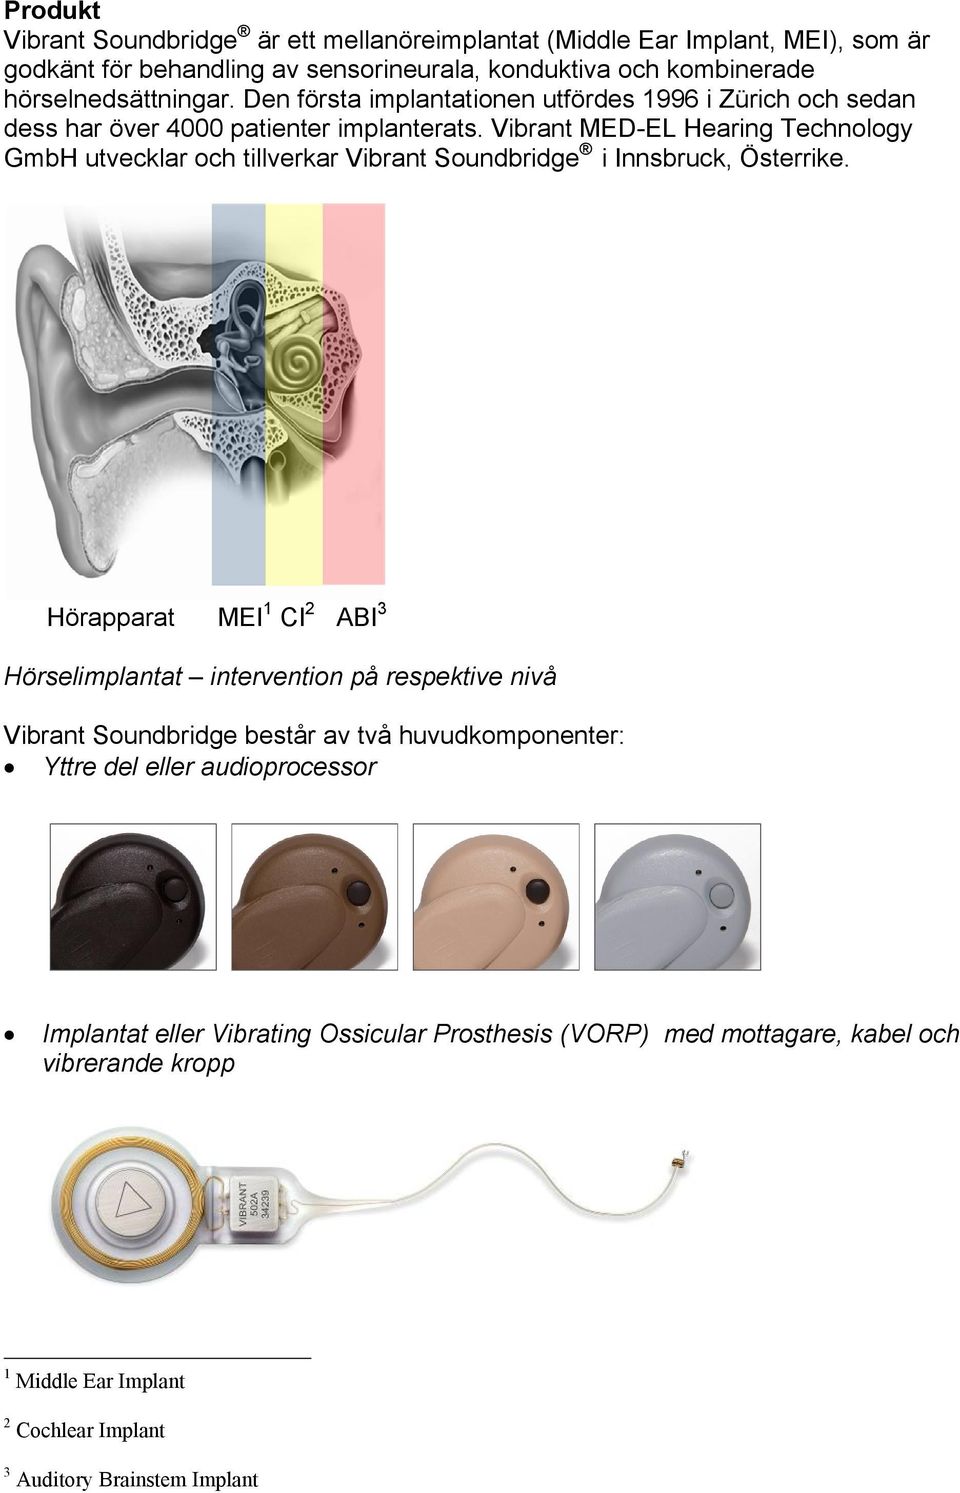 Vibrant MED-EL Hearing Technology GmbH utvecklar och tillverkar Vibrant Soundbridge i Innsbruck, Österrike.